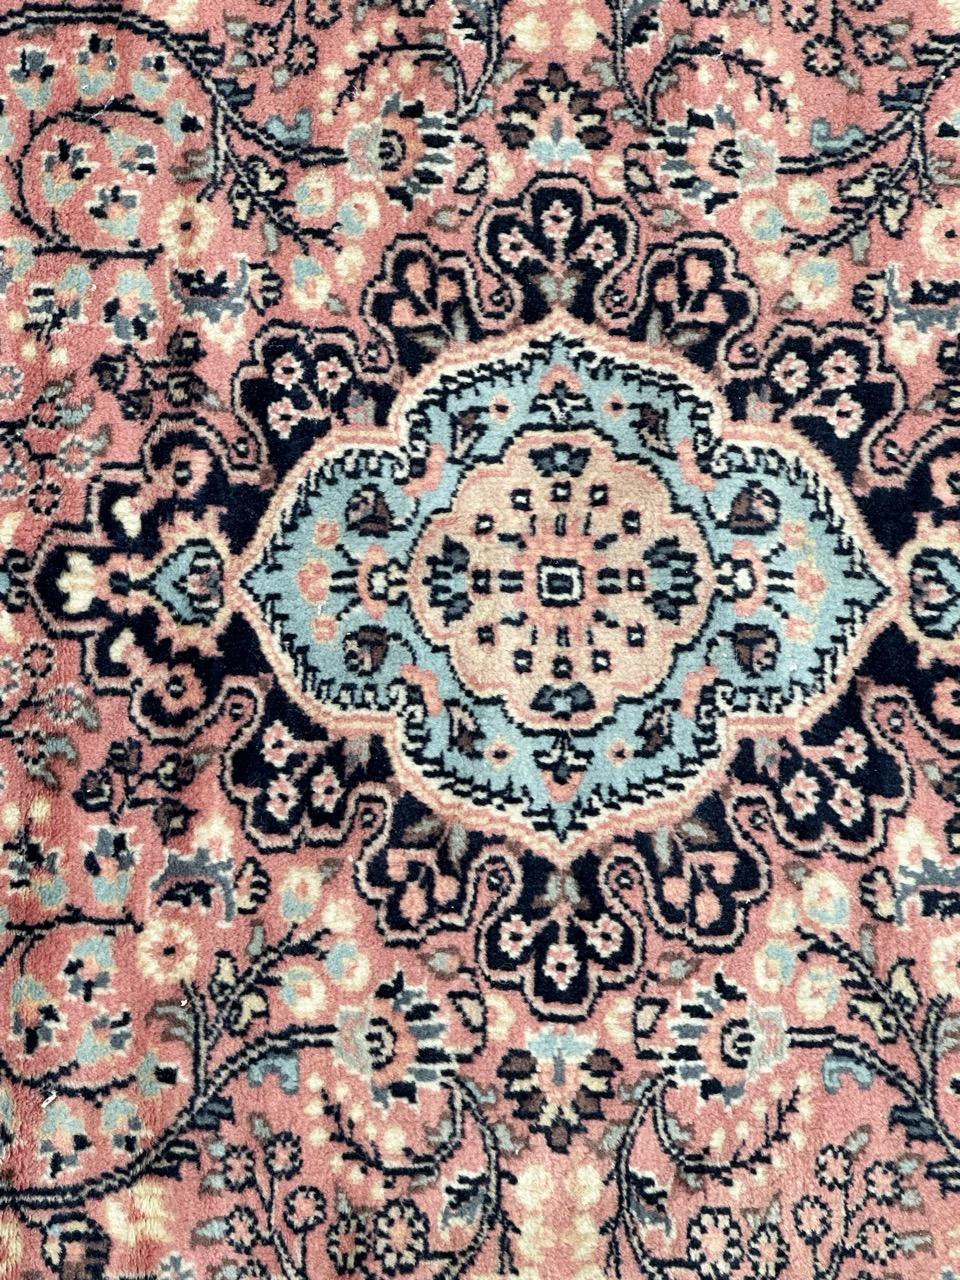 Schöner pakistanischer Vintage-Teppich mit schönem persischen Design und schönen Farben mit rosa, weiß, himmelblau und dunkelblau, ganz und fein handgeknüpft aus Wolle und Seide auf Baumwollbasis.

✨✨✨
